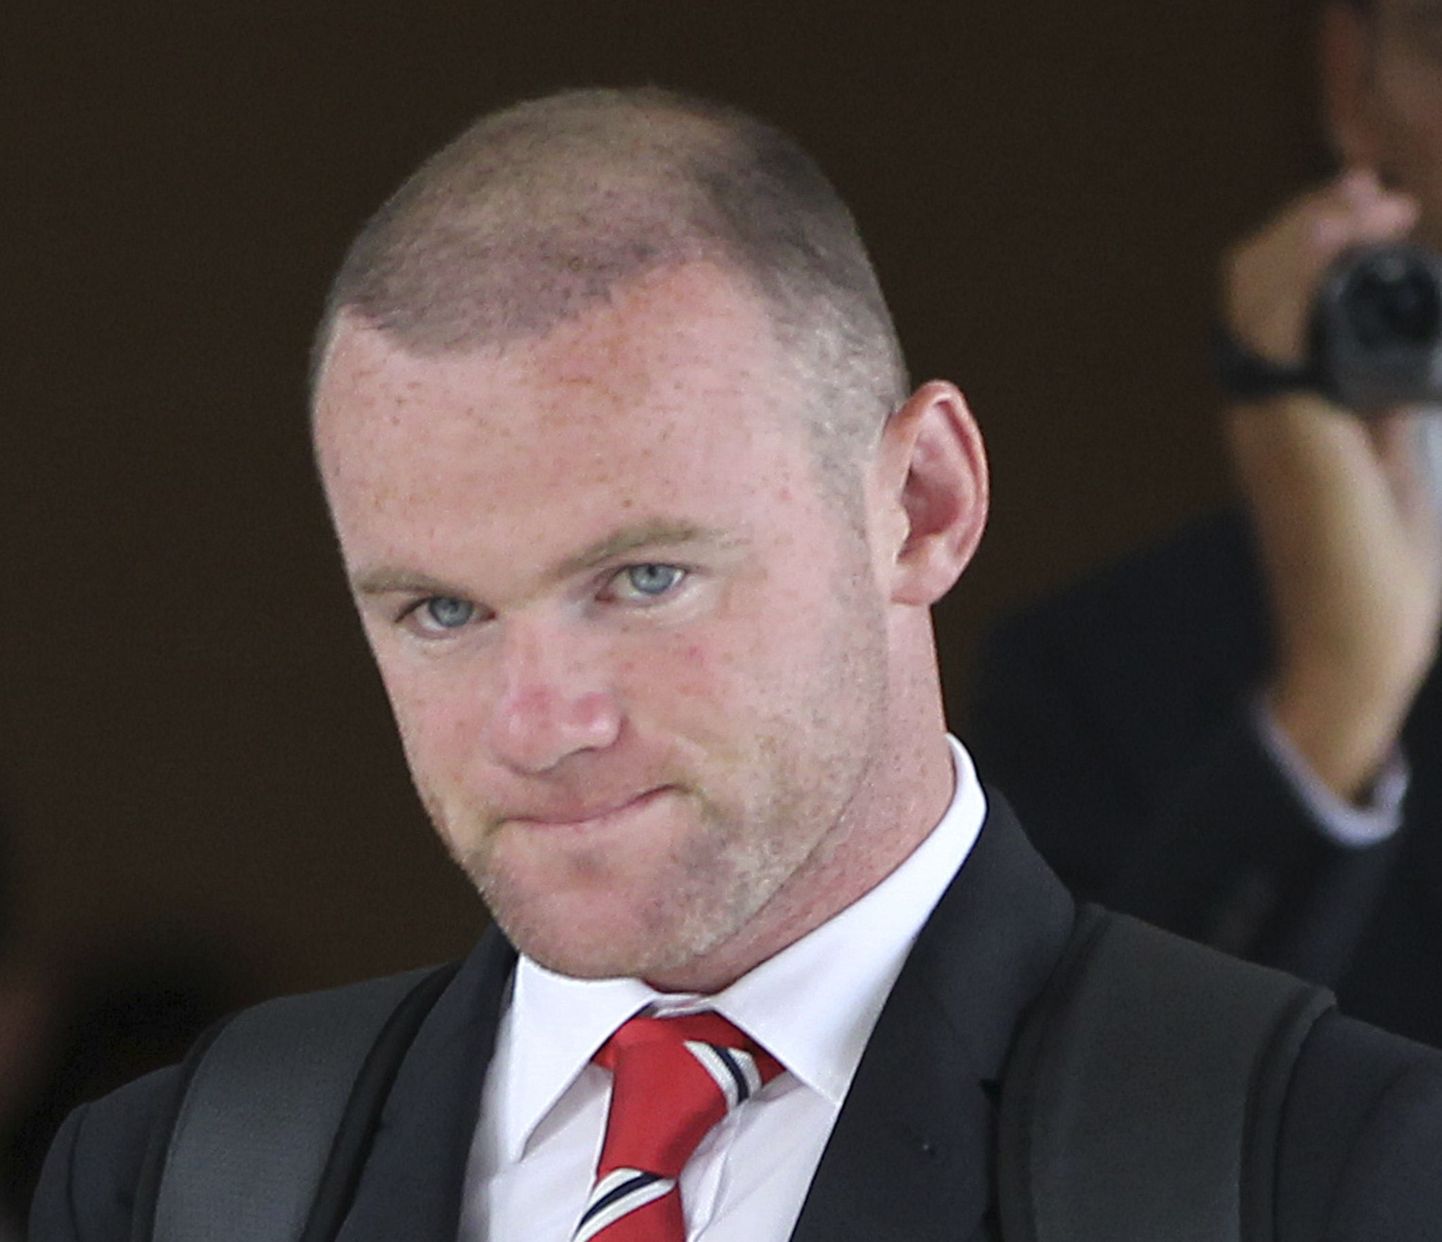 Wayne Rooney Bangkoki lennujaamas. Vigastuse tõttu jäi mehe reis lühikeseks